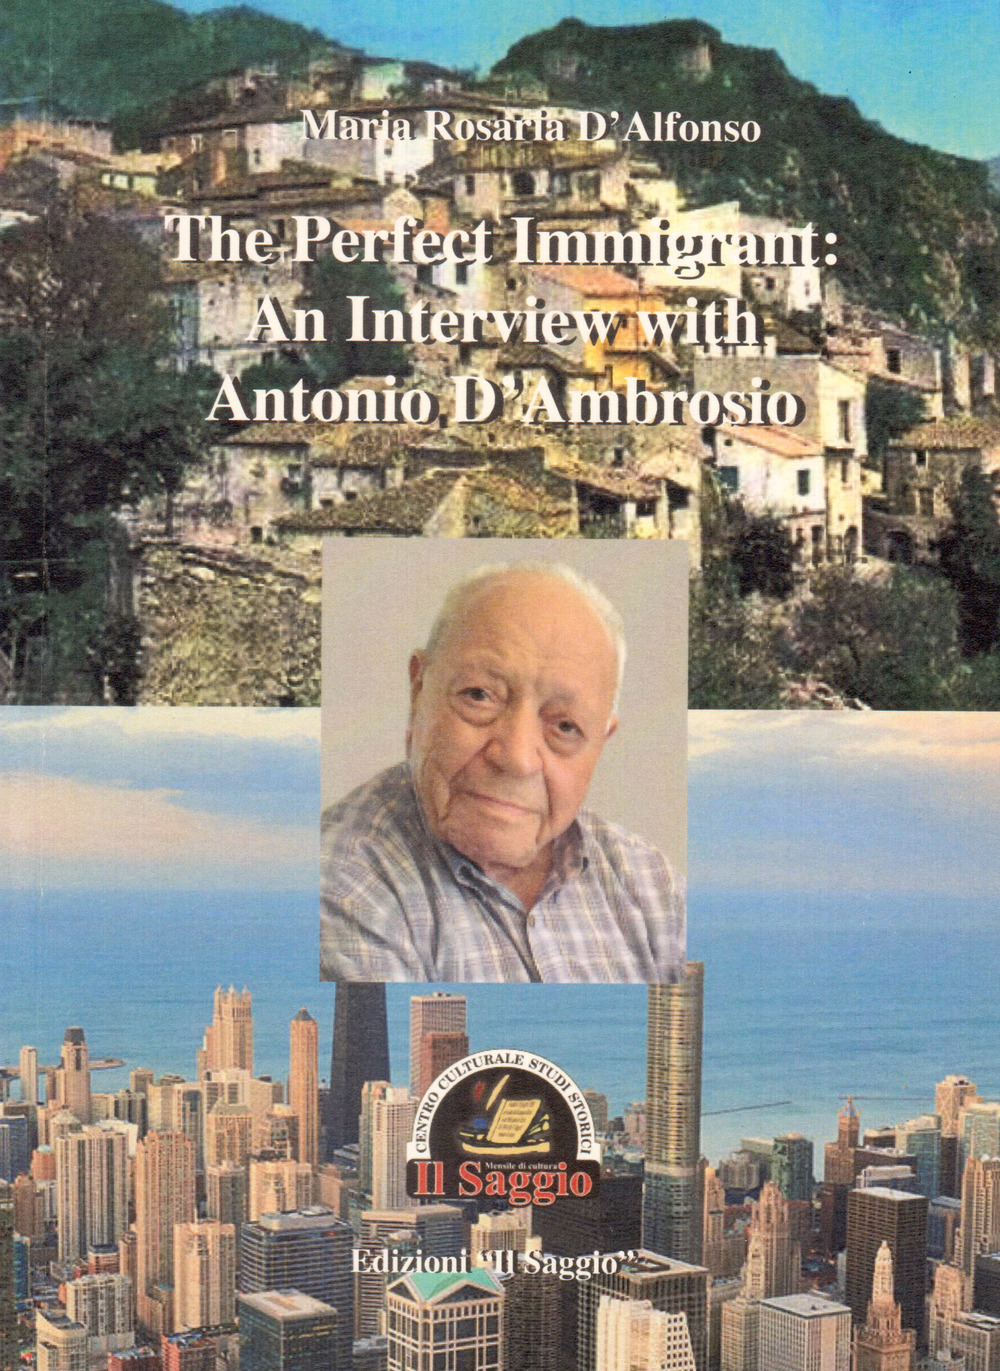 Libri D'Alfonso Maria Rosaria - The Perfect Immigrant: An Interview With Antonio D'ambrosio NUOVO SIGILLATO, EDIZIONE DEL 01/01/2018 SUBITO DISPONIBILE